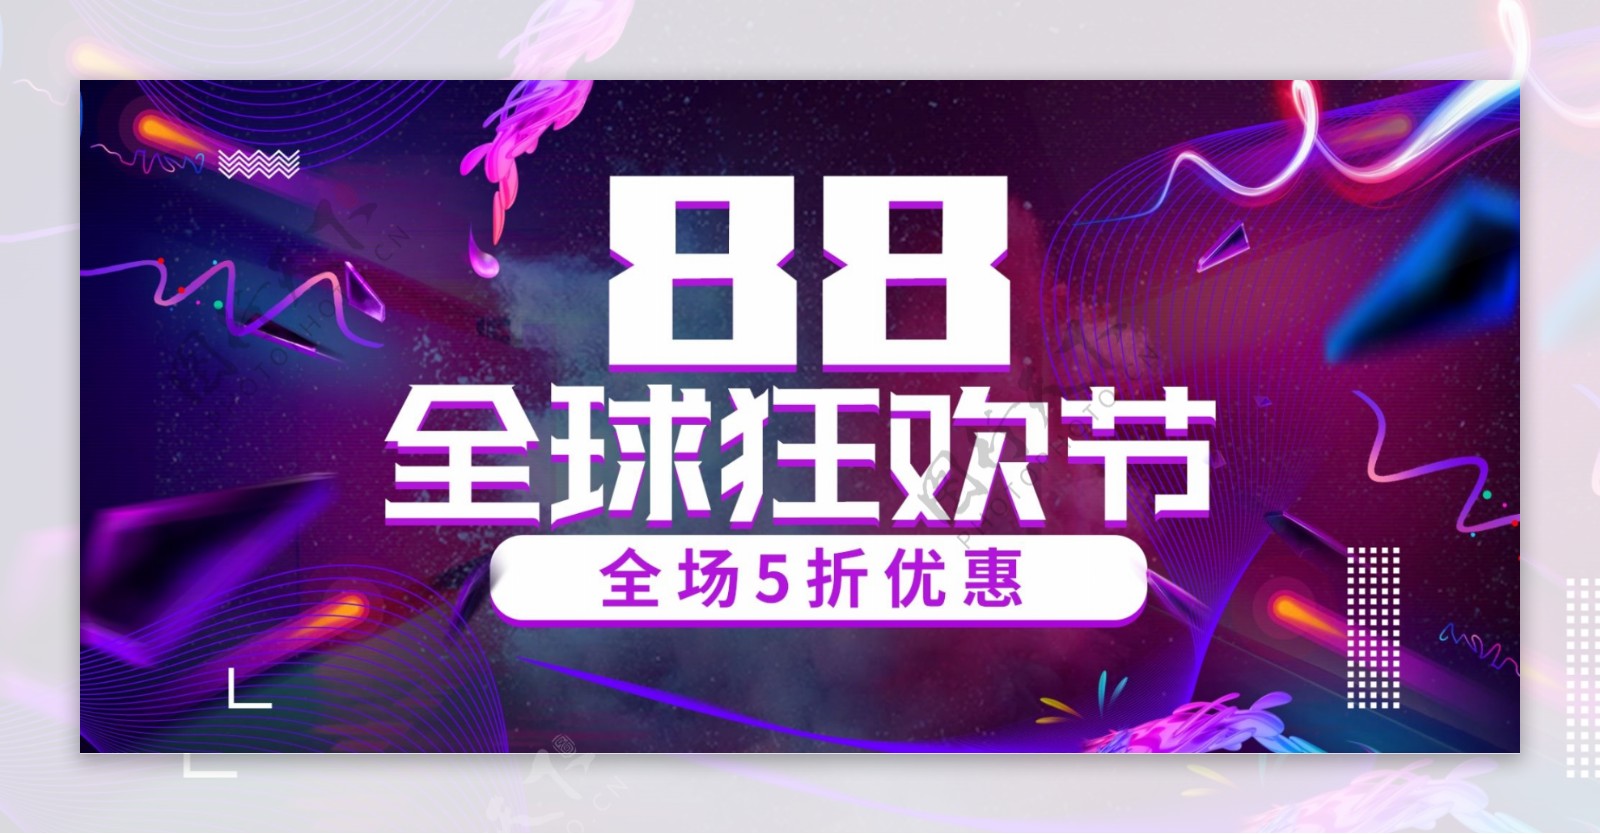 欧普重构风紫色炫酷88全球狂欢节电商海报